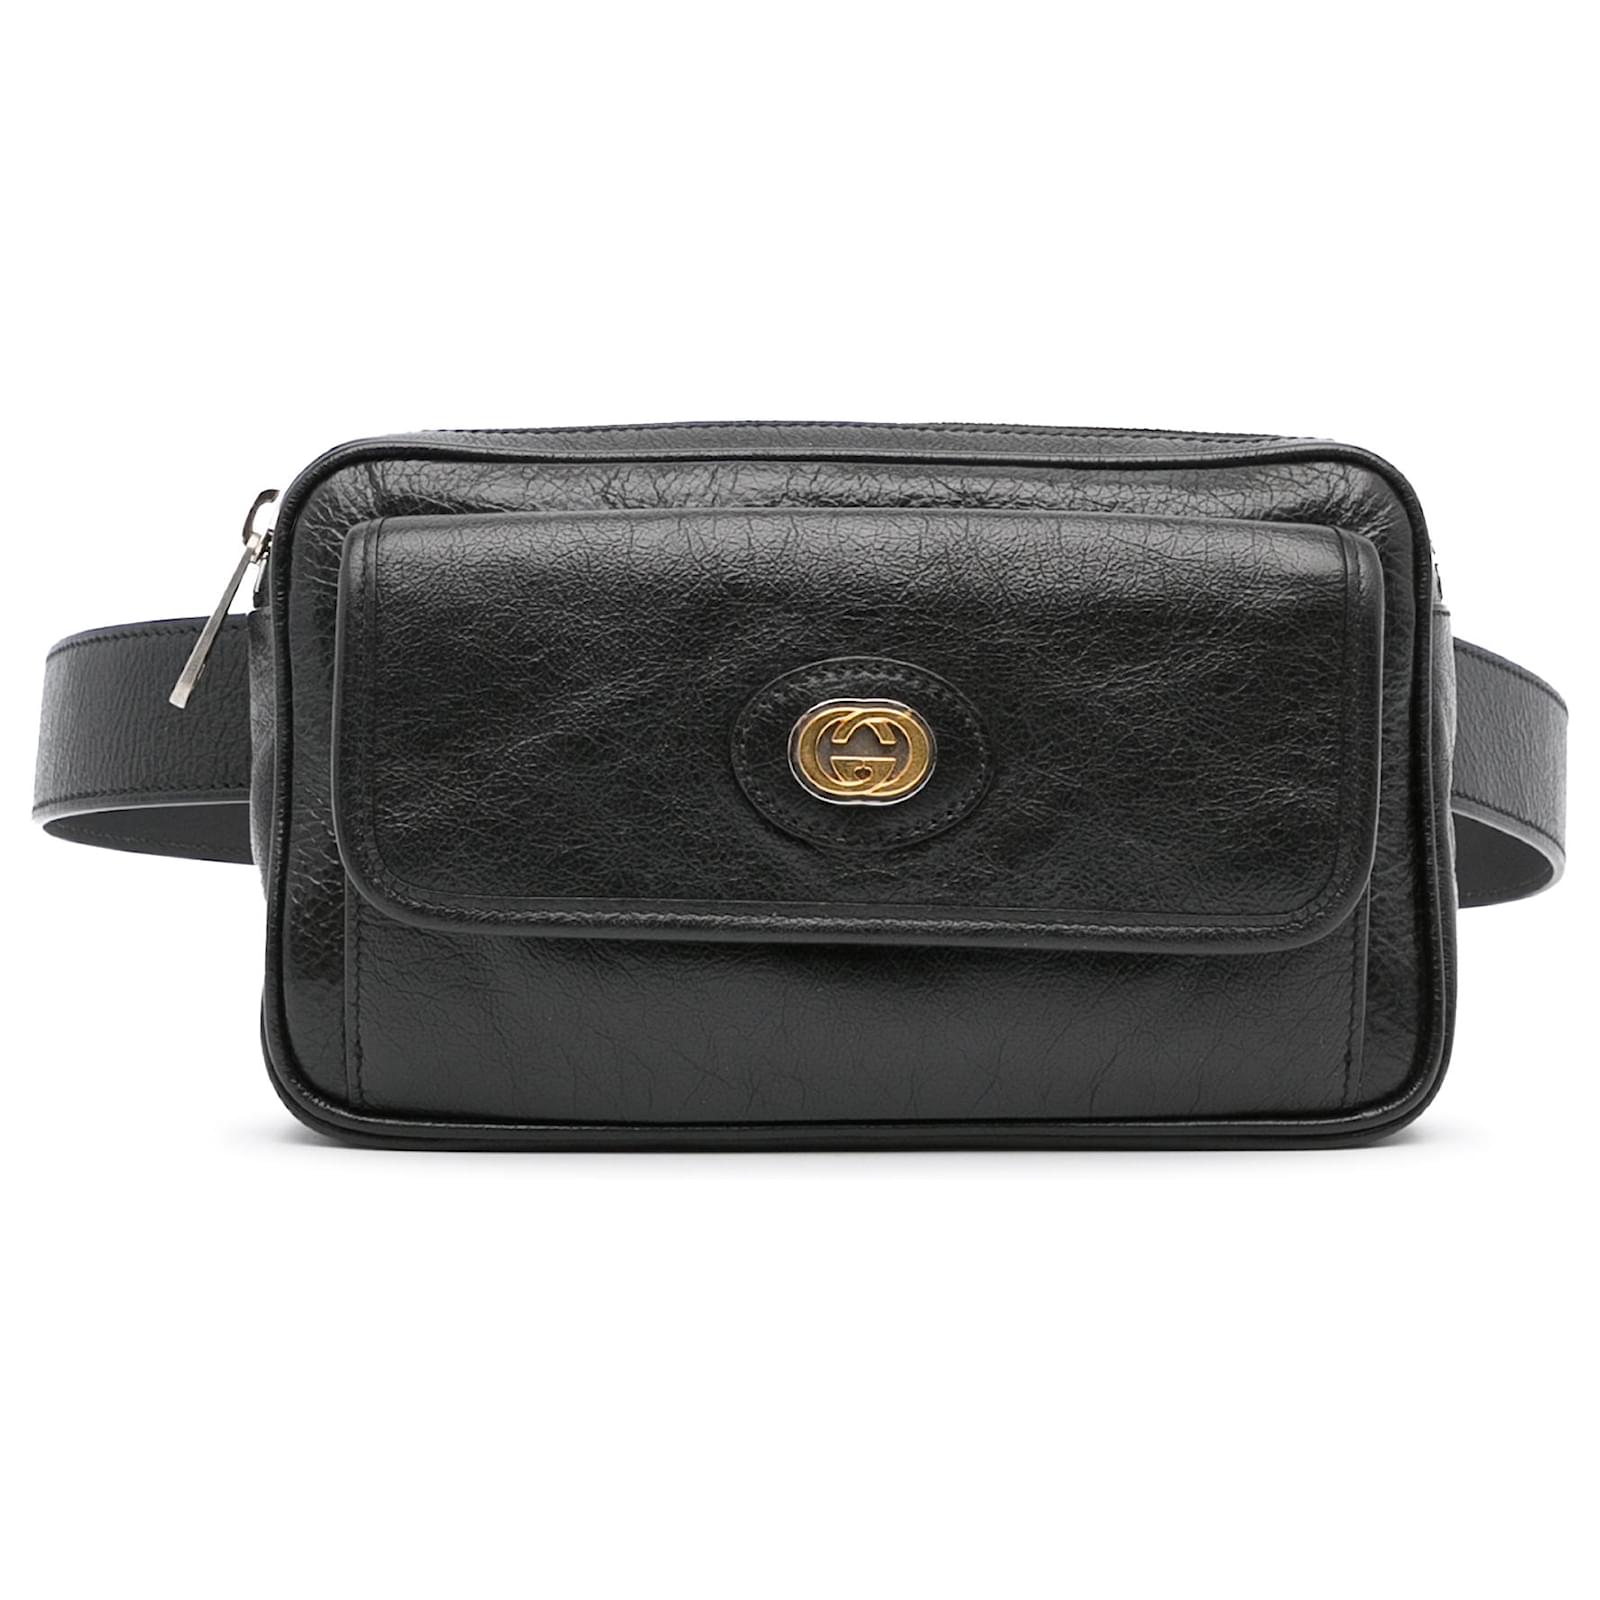 Belt bag with Interlocking G  Bags, Gucci bag, Gucci shoulder bag